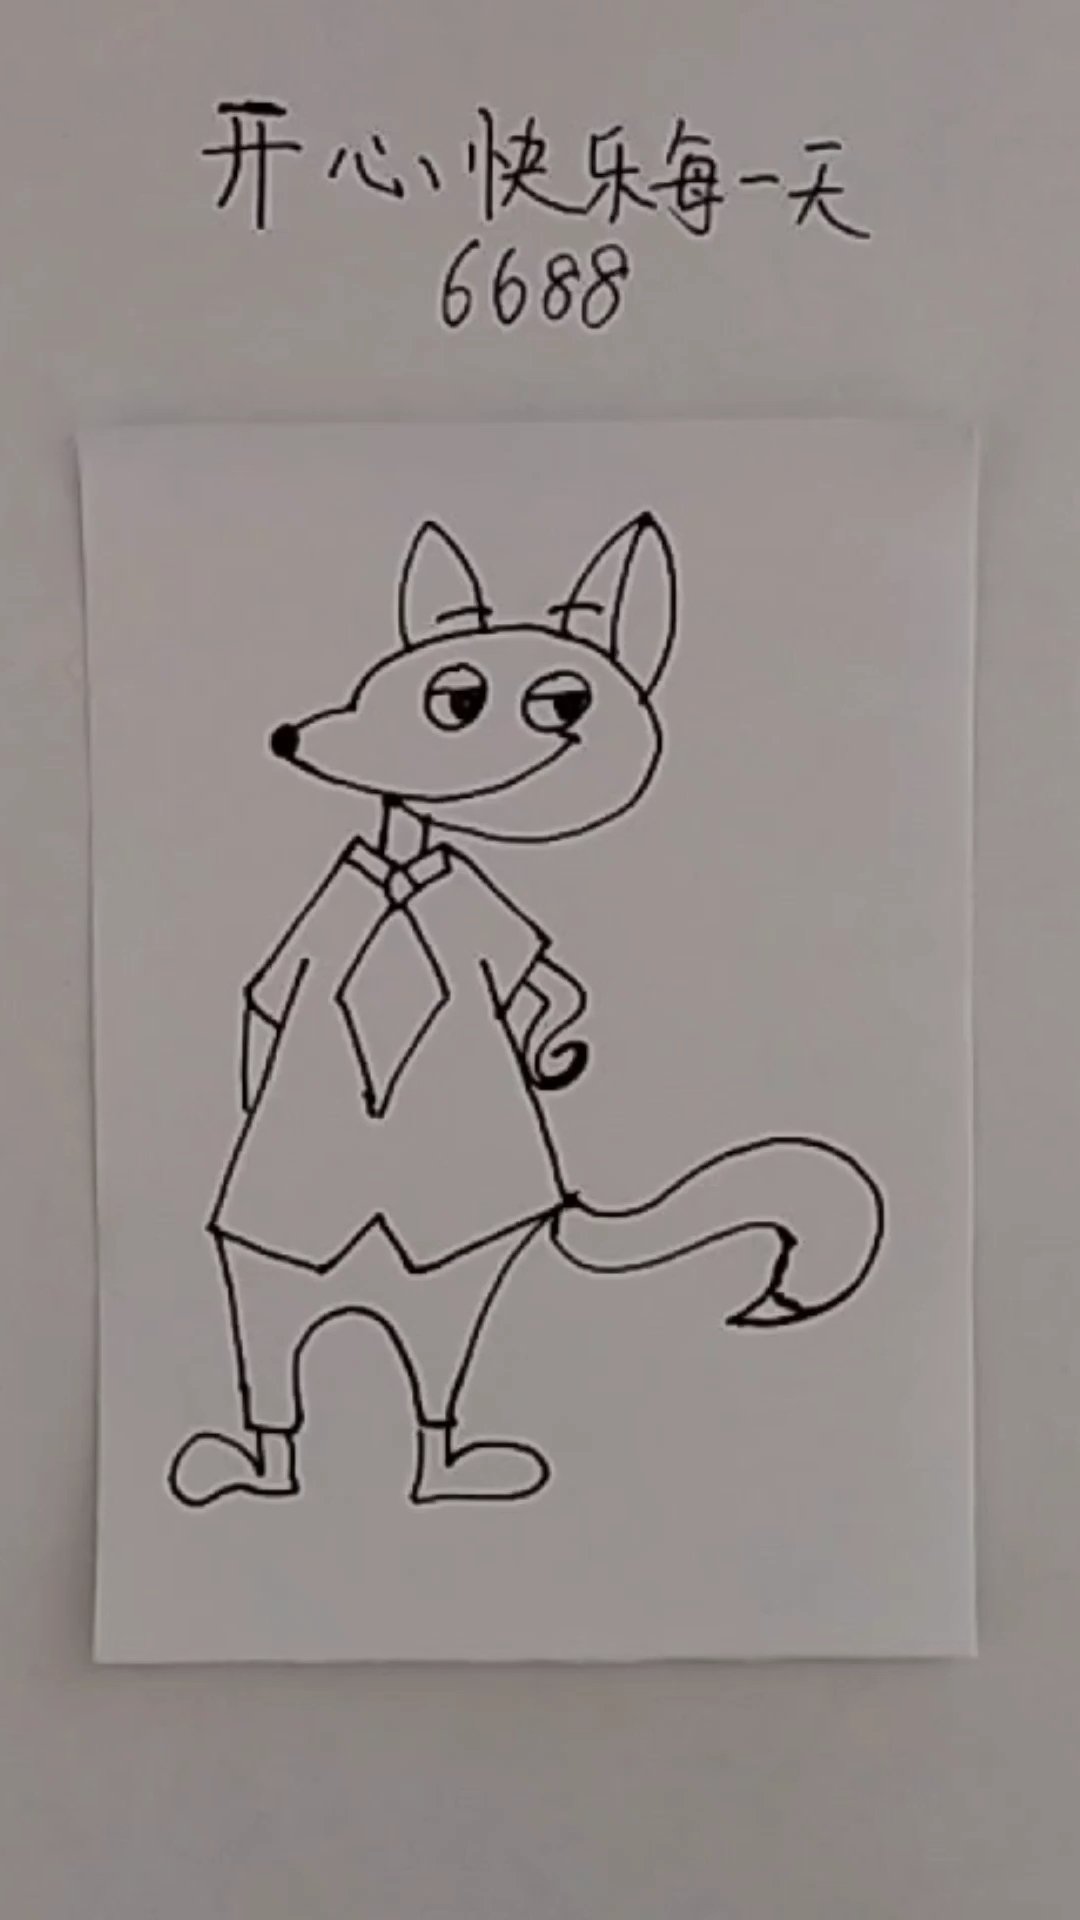 狐狸简笔画狡猾图片